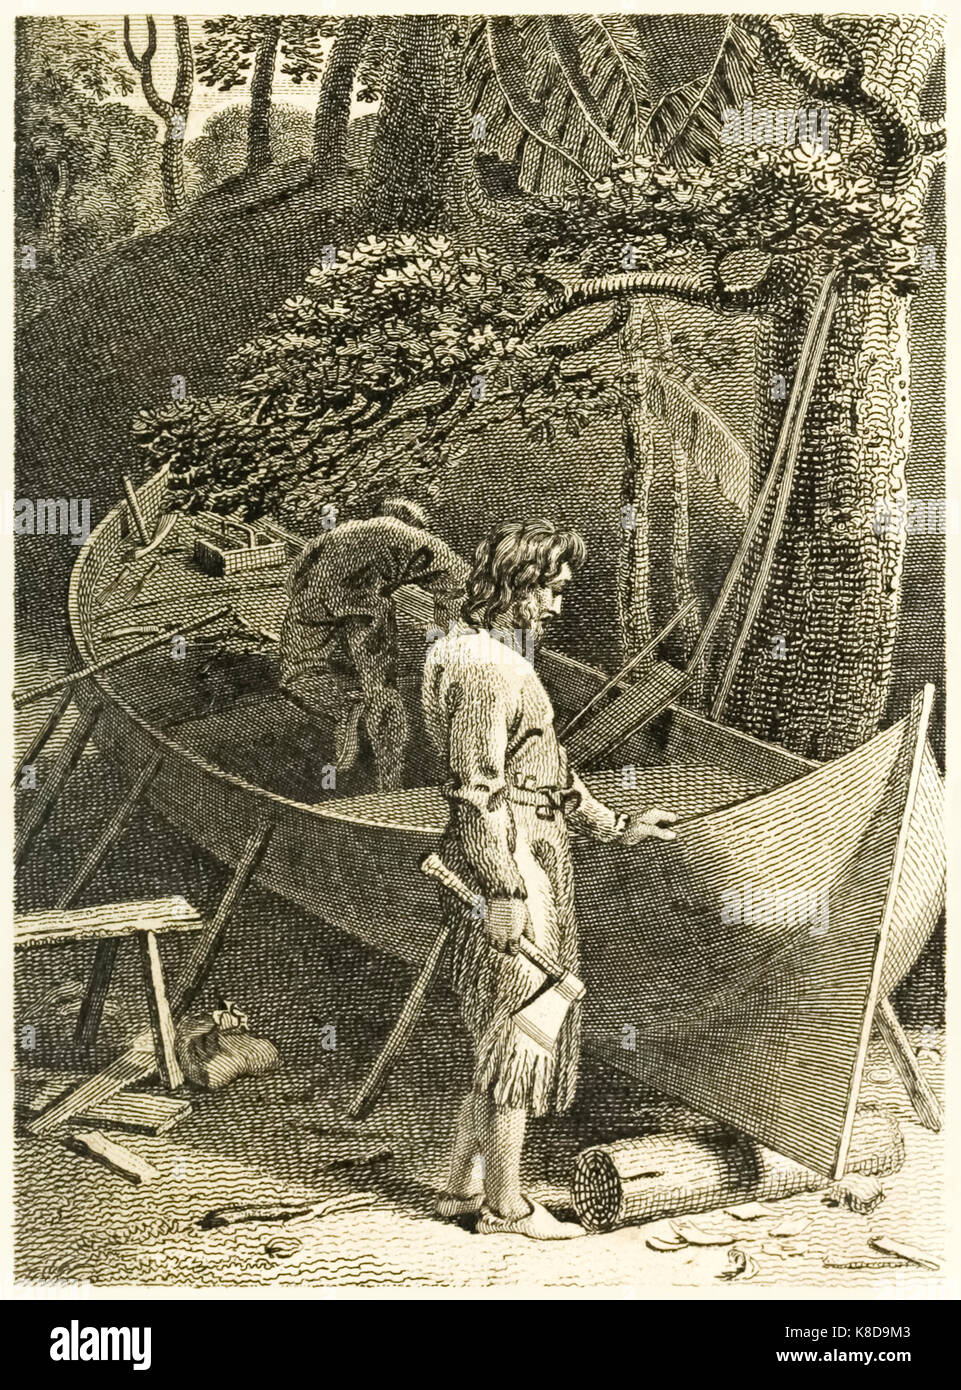 'Robinson Crusoe und Freitag ein Boot" aus "Das Leben und die seltsamen überraschenden Abenteuer des Robinson Crusoe, oder York, Mariner" von Daniel Defoe (1660-1731). Abbildung von Thomas Stothard (1755-1834) Stich von Thomas Galen (1765-1833). Weitere Informationen finden Sie unter Stockfoto